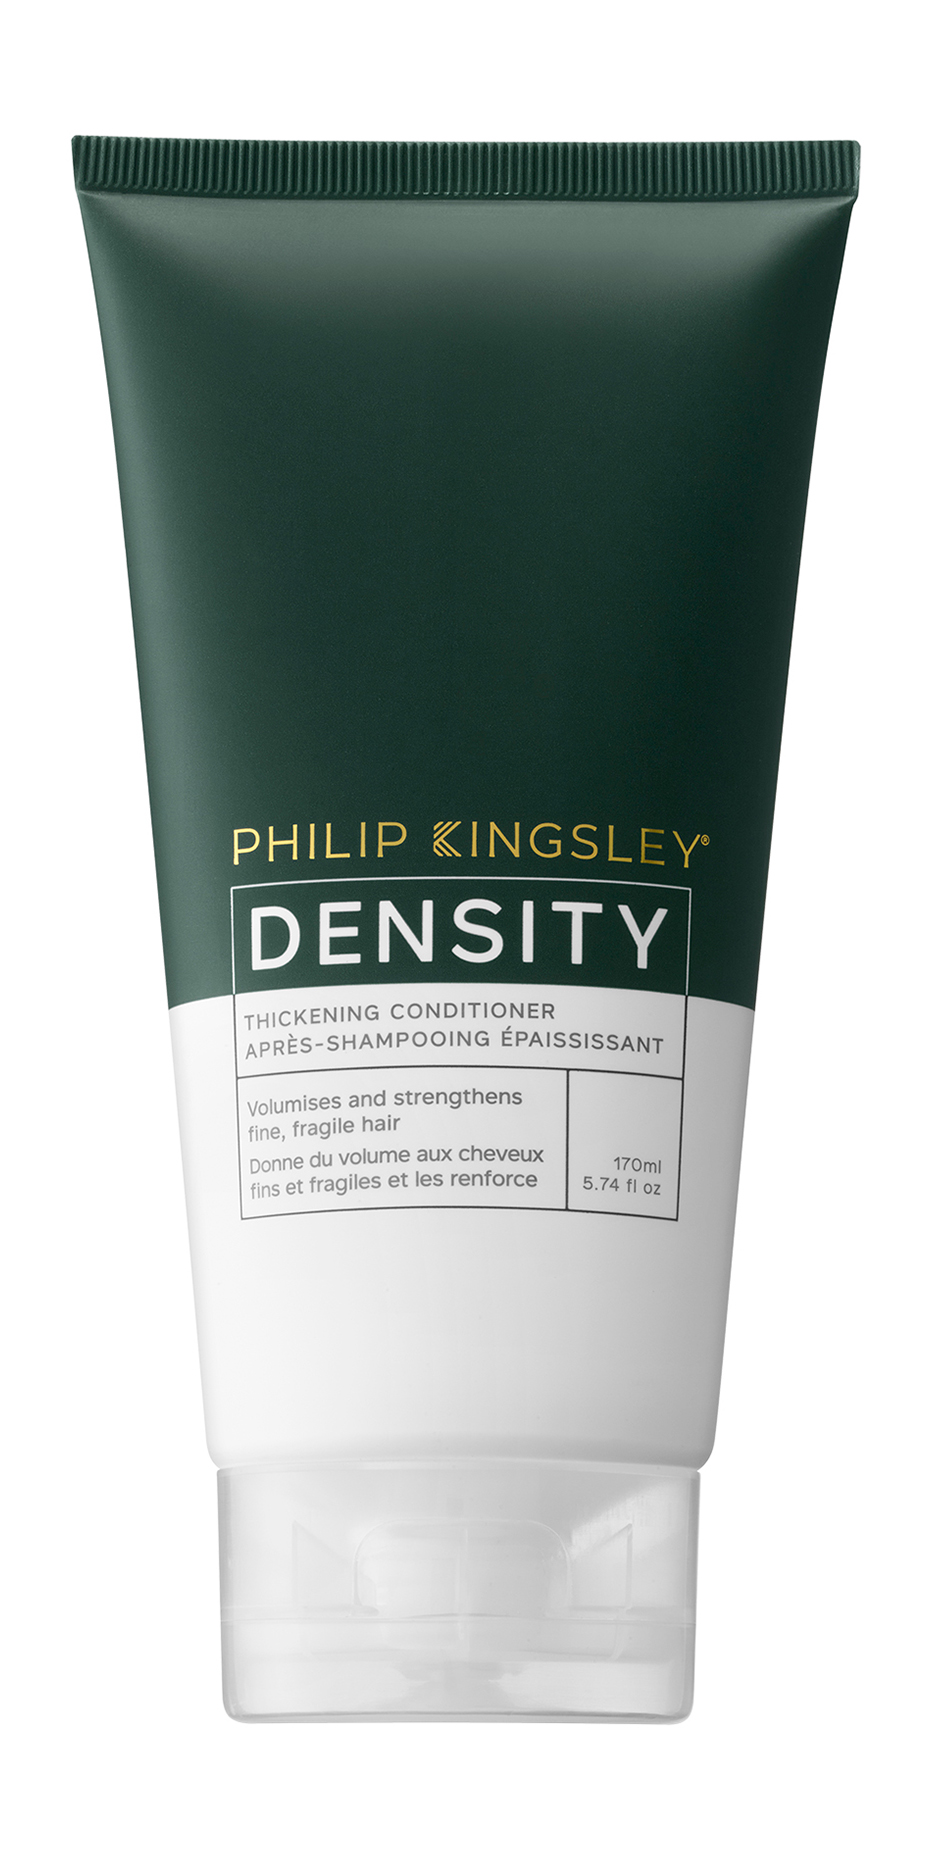 Кондиционер для волос Philip Kingsley Density Thickening Conditioner, 170 мл шампунь с биотином молекулой цинка рса и системой gluco omega для тонких волос full density e1498501 250 мл